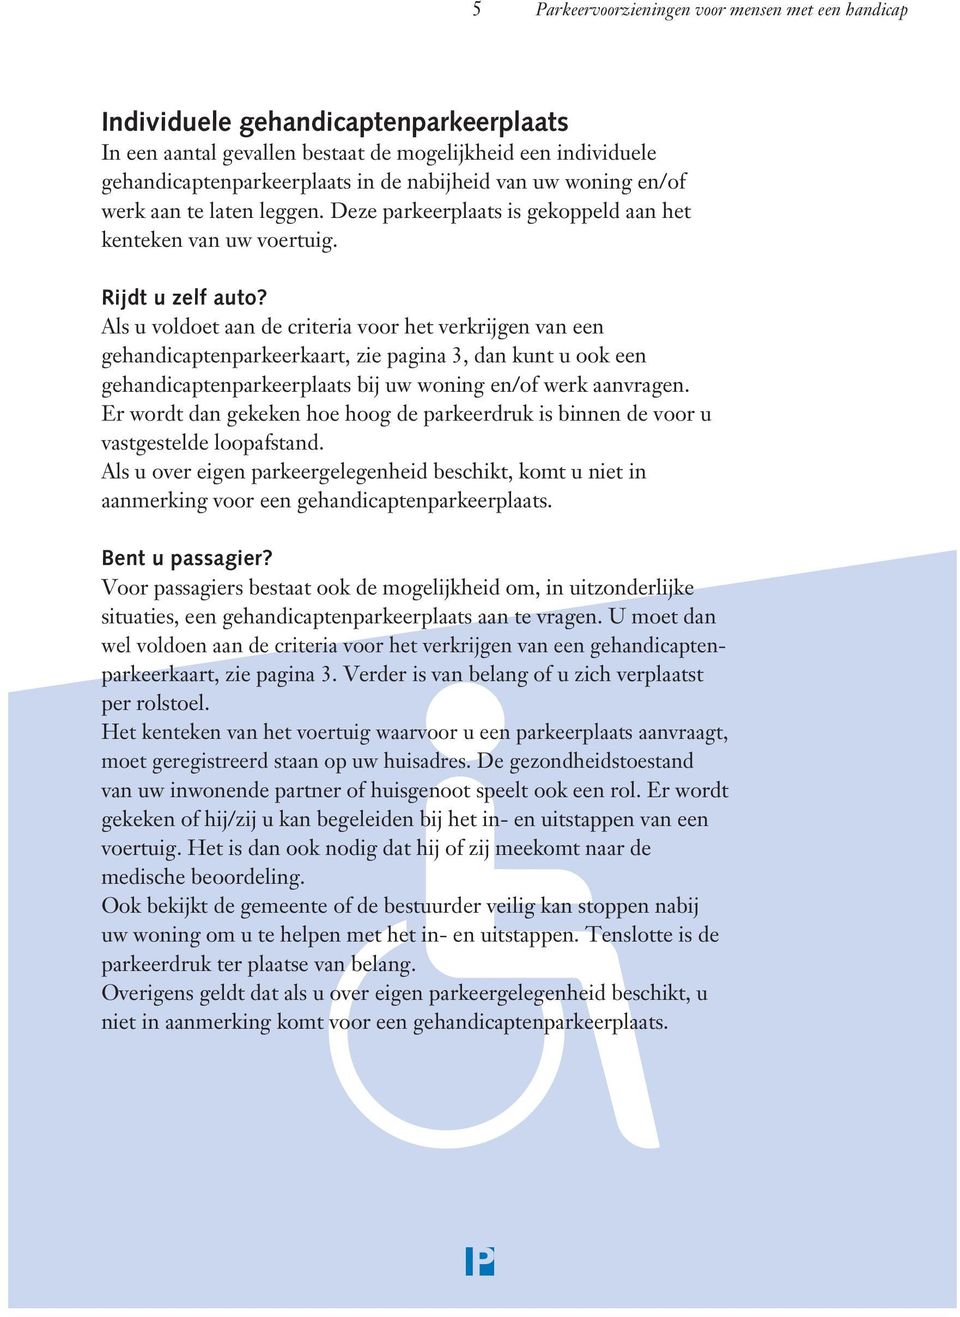 Als u voldoet aan de criteria voor het verkrijgen van een gehandicaptenparkeerkaart, zie pagina 3, dan kunt u ook een gehandicaptenparkeerplaats bij uw woning en/of werk aanvragen.